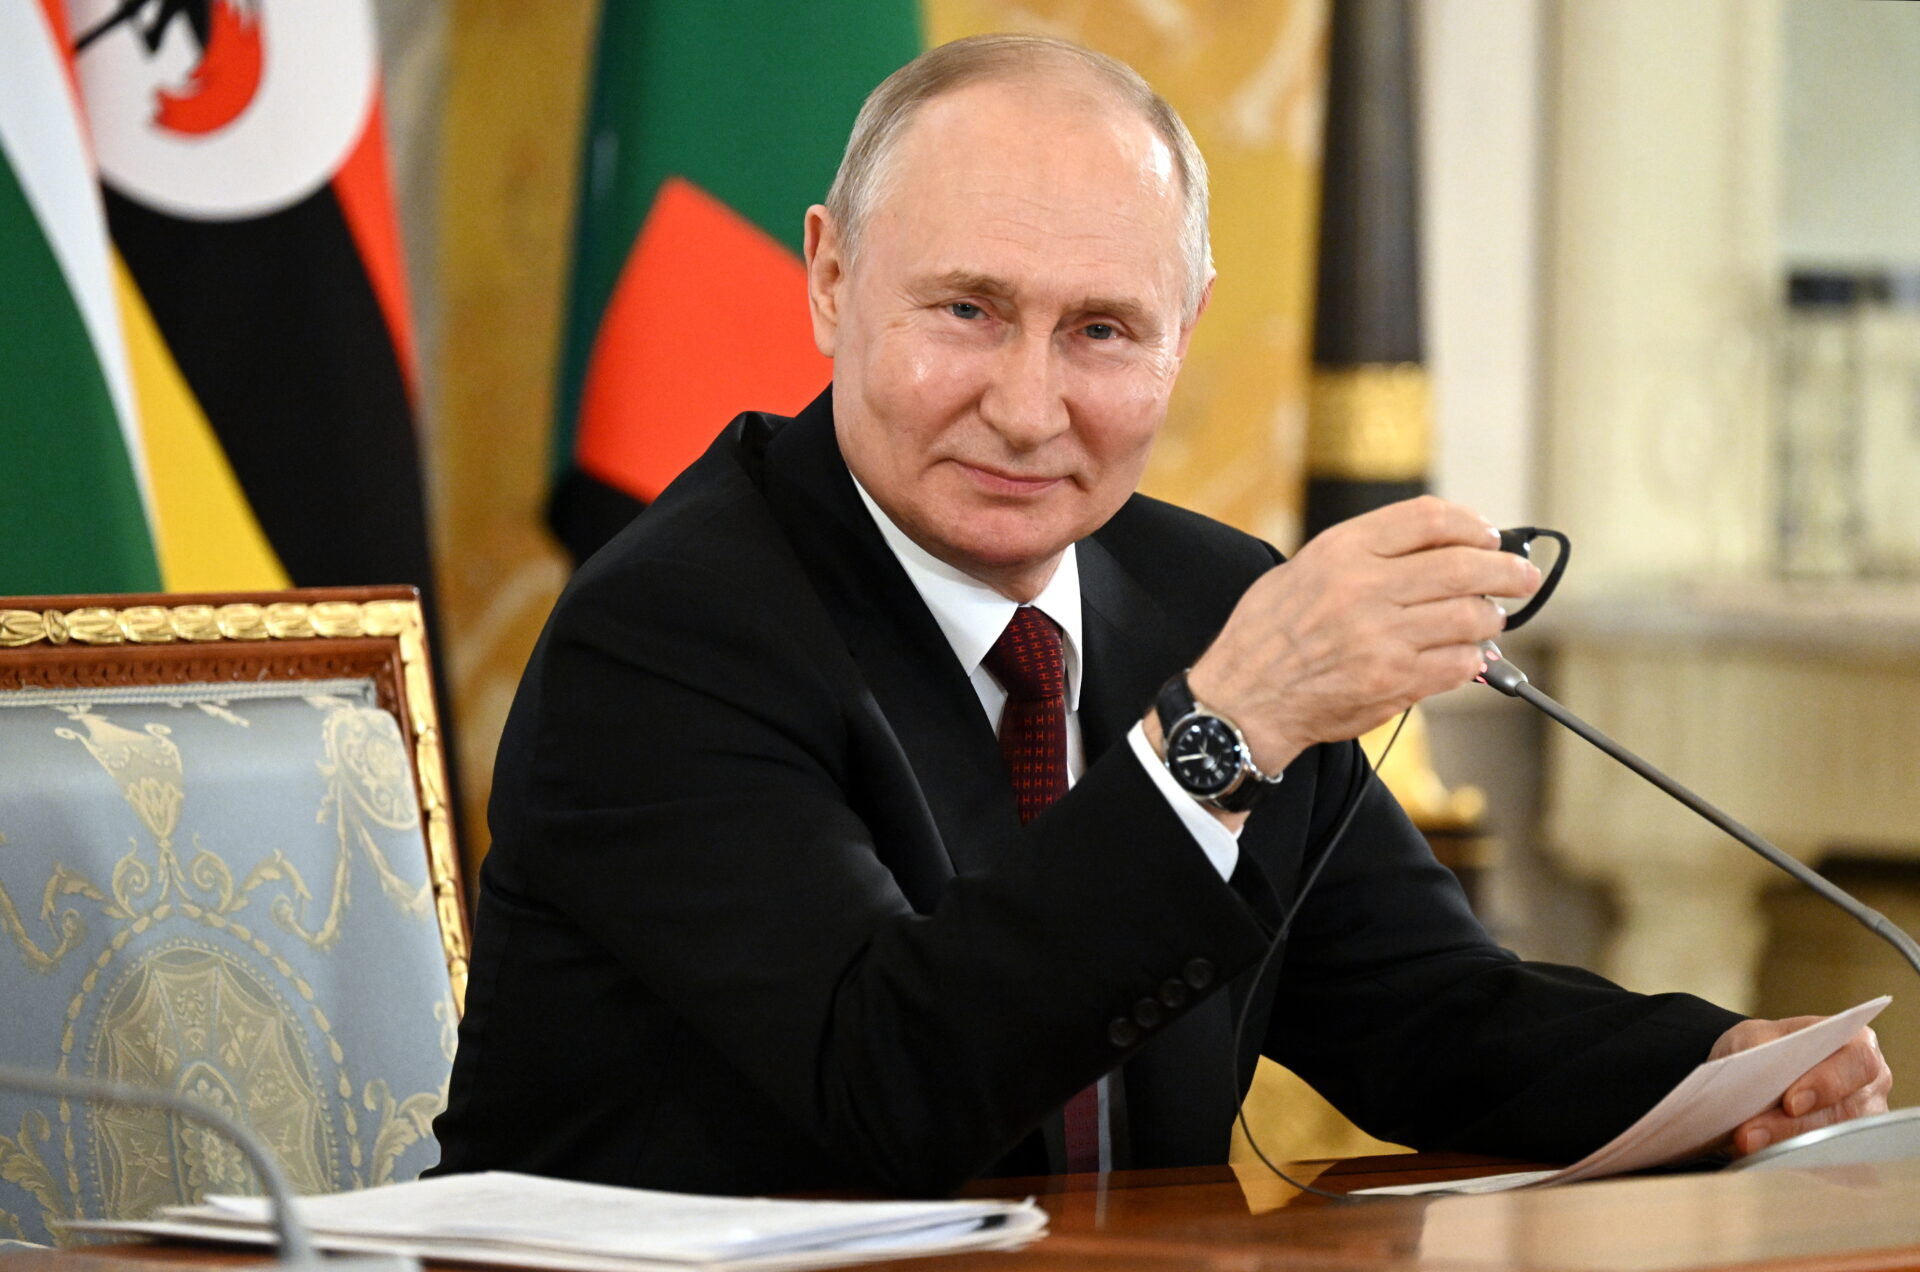 Putin es reelegido presidente de Rusia por seis años tras lograr 87.5% de votos